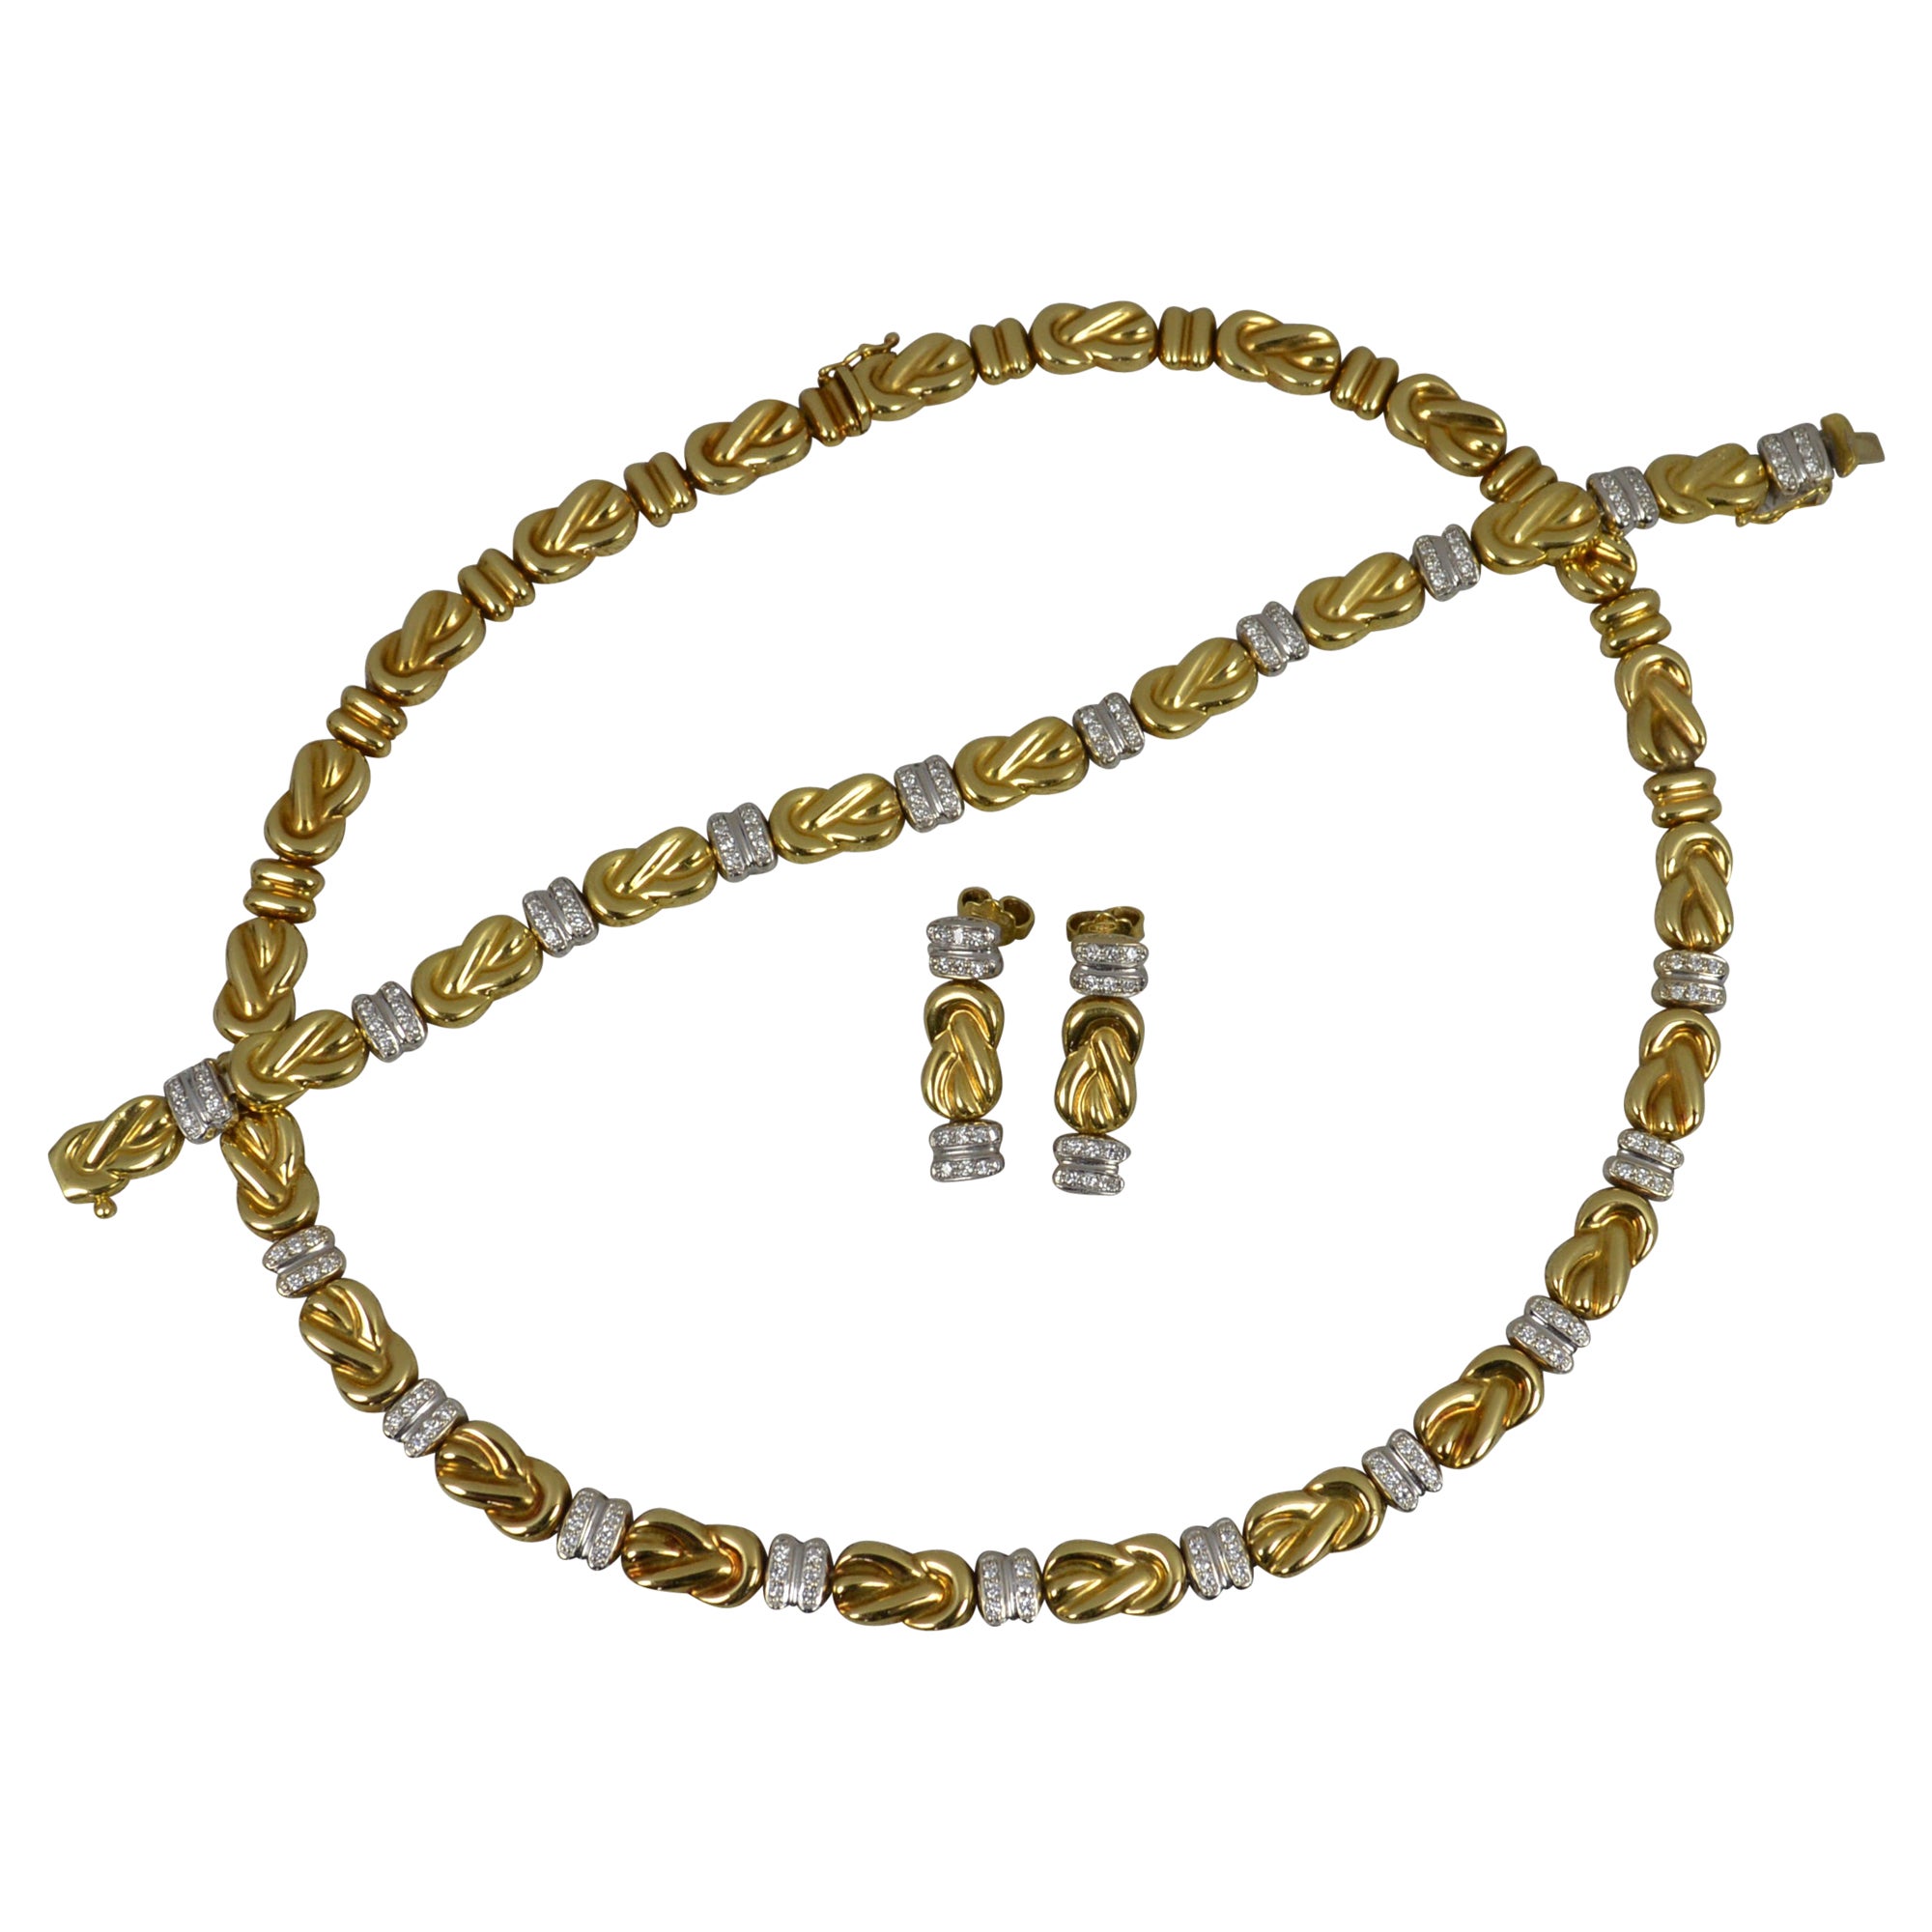 Suite de colliers, bracelets et boucles d'oreilles en or 18 carats et diamants du designer Chiampesan